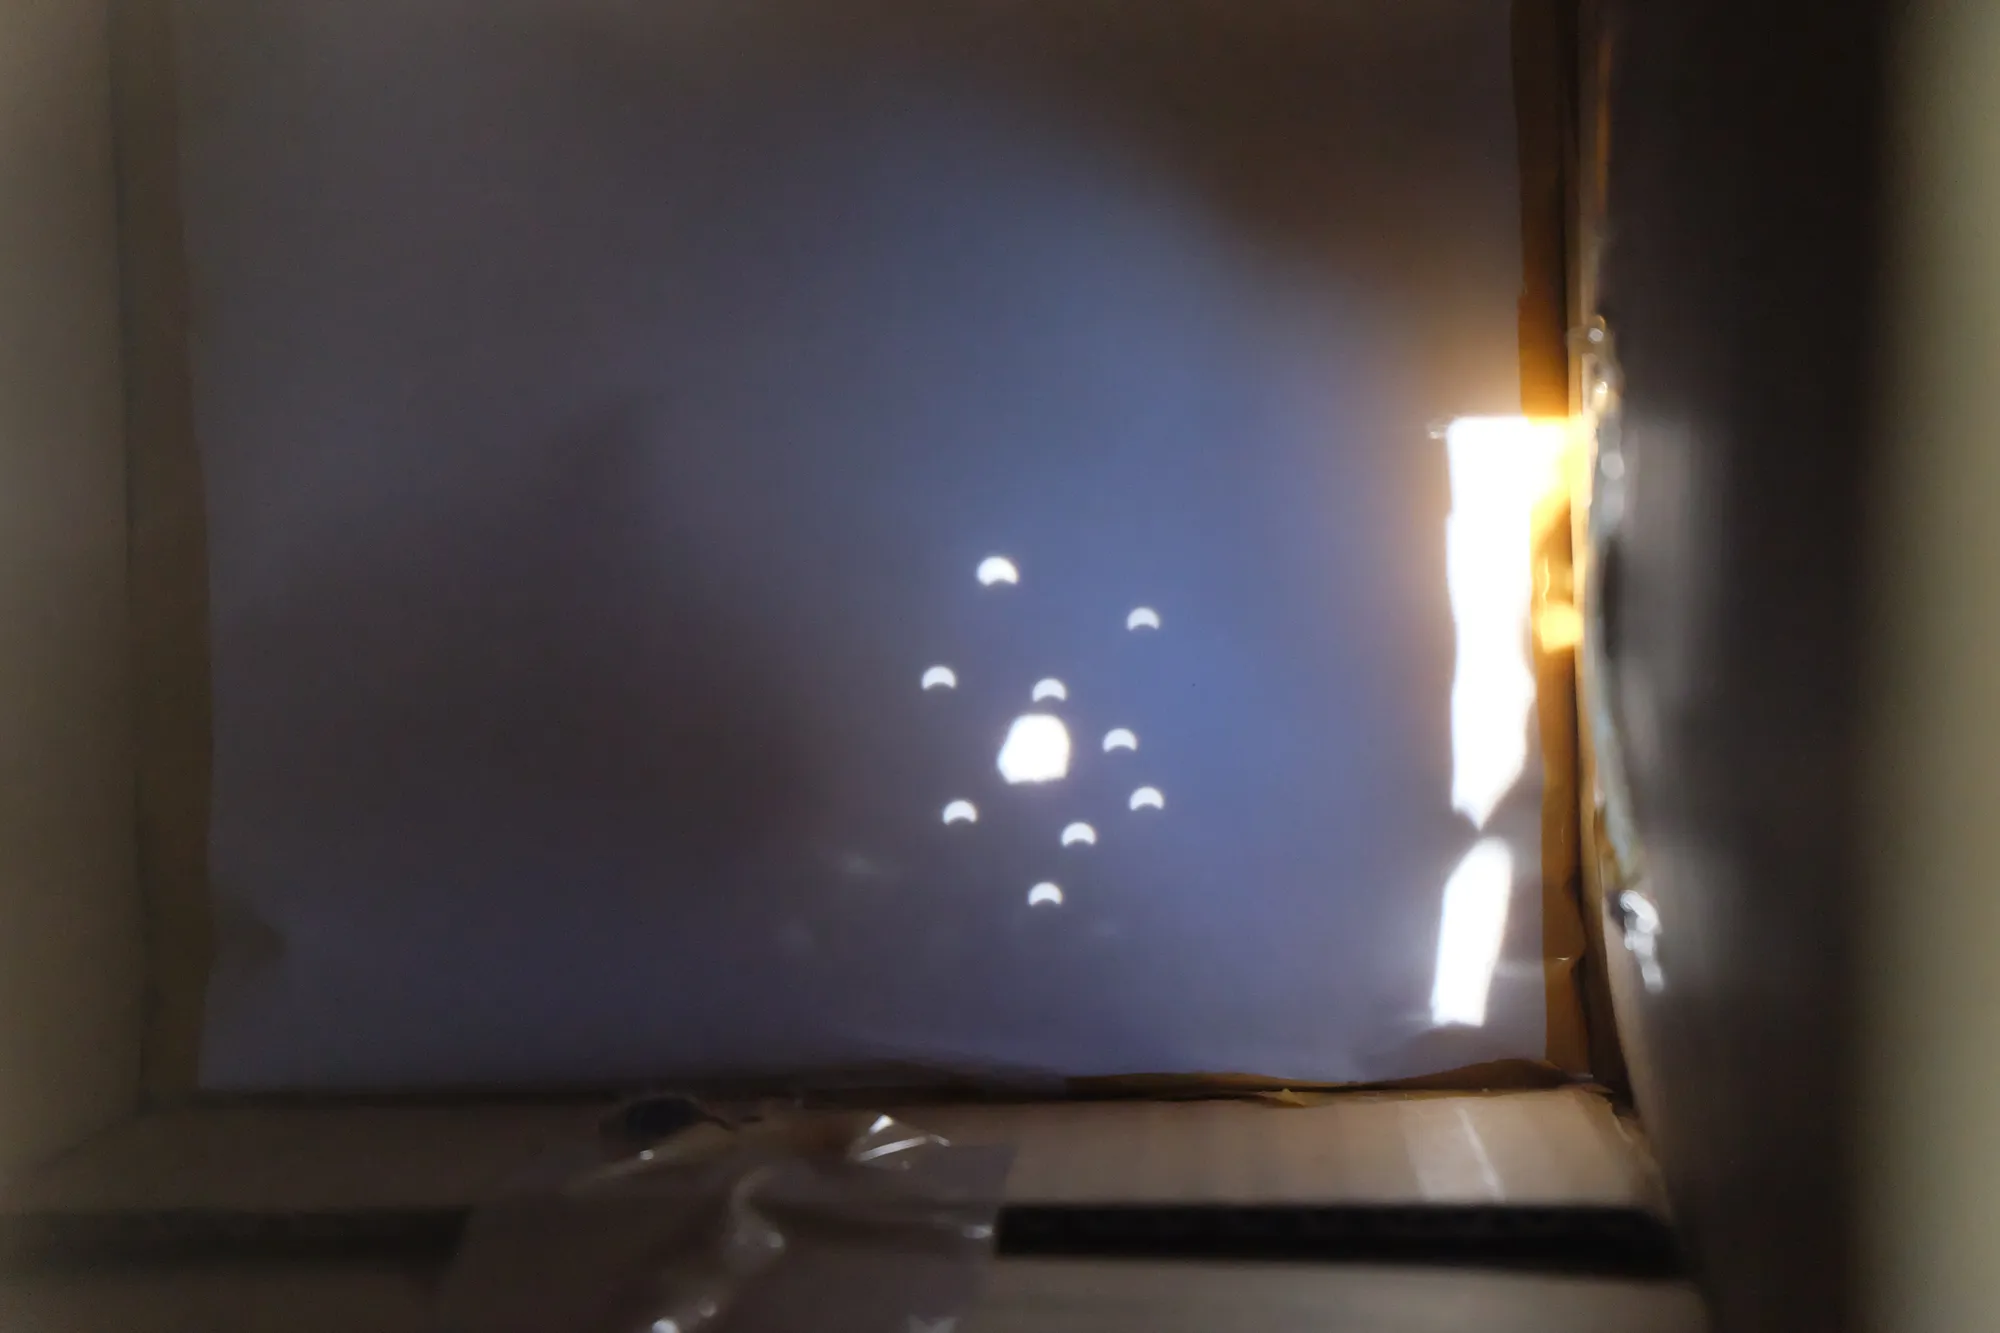 Gambar 7. Hasil pengamatan gerhana matahari melalui kotak lubang jarum dan kamera.